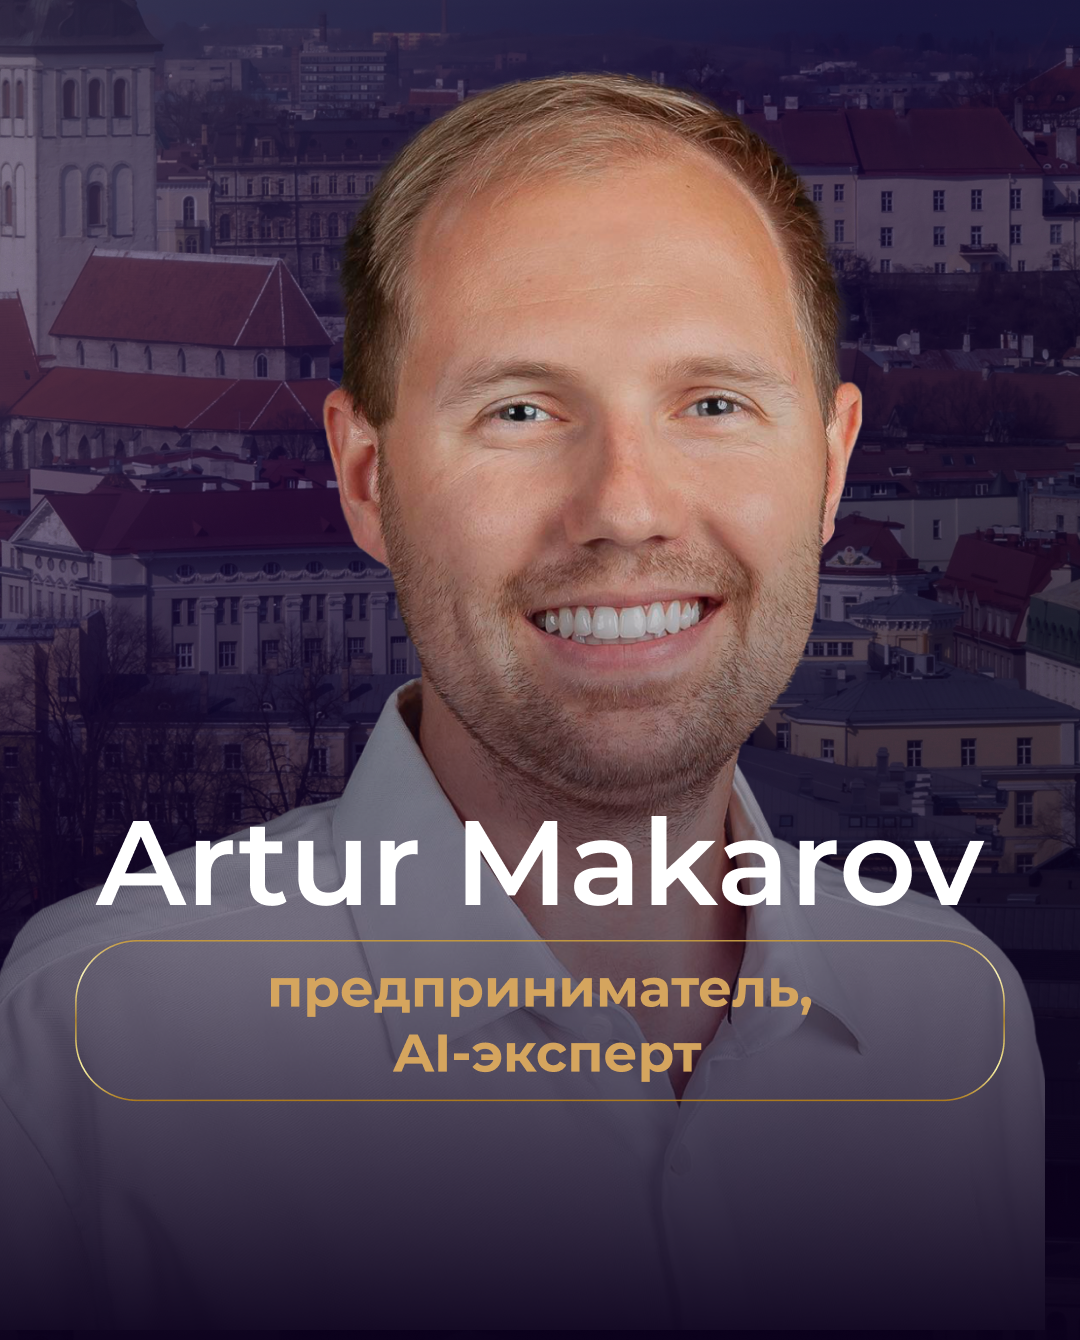 Artur Makarov 12